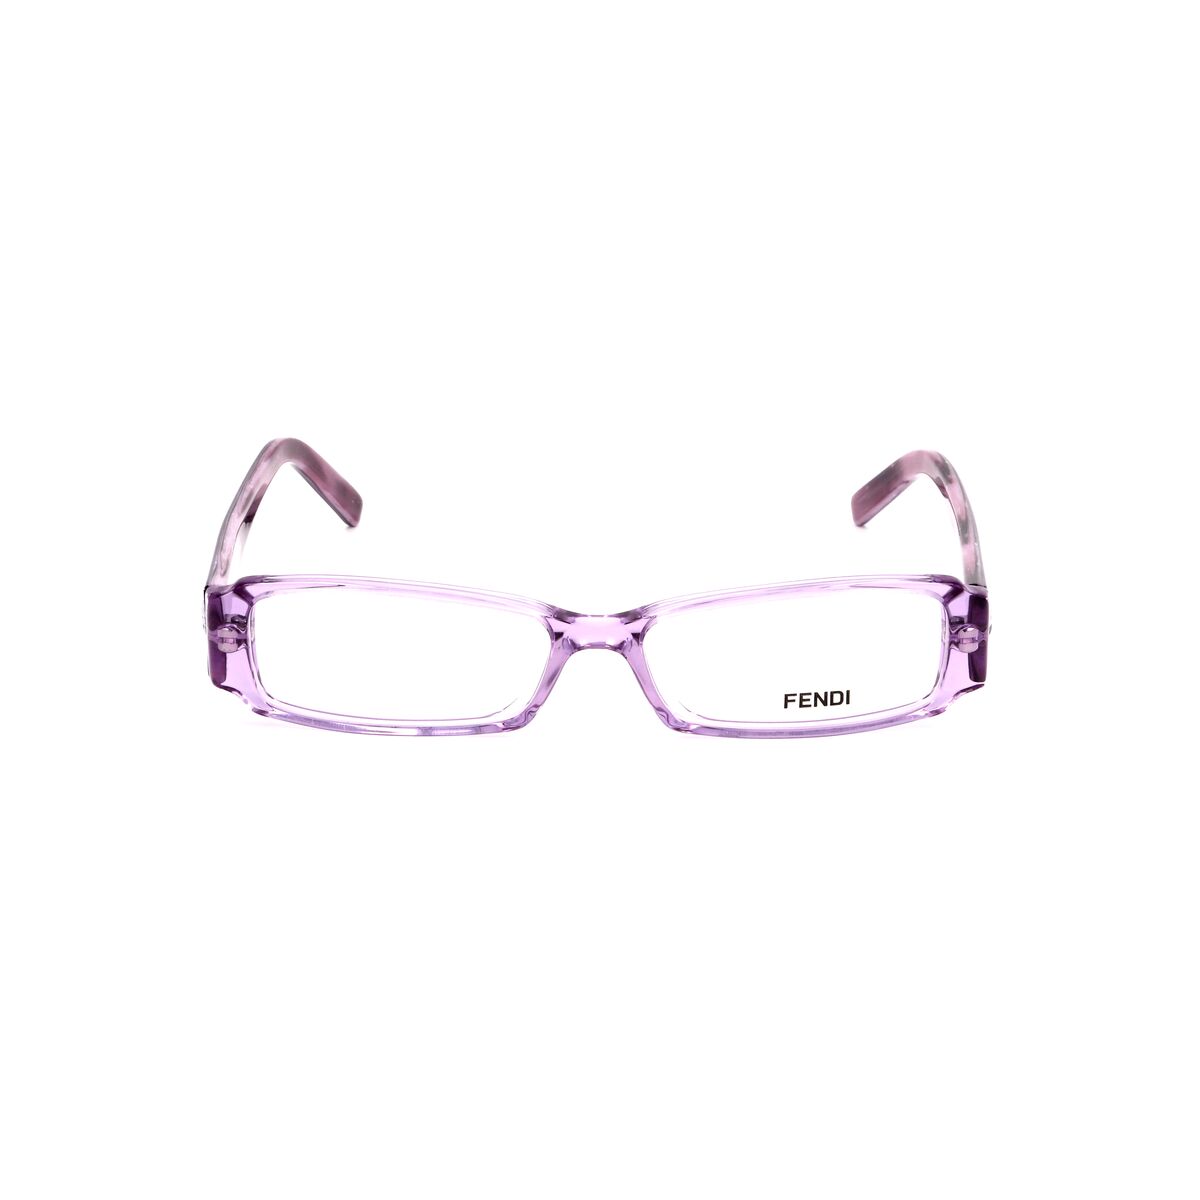 Fendi Brillenfassung FENDI-891-513 Brille Ohne Sehstärke Brillengestell